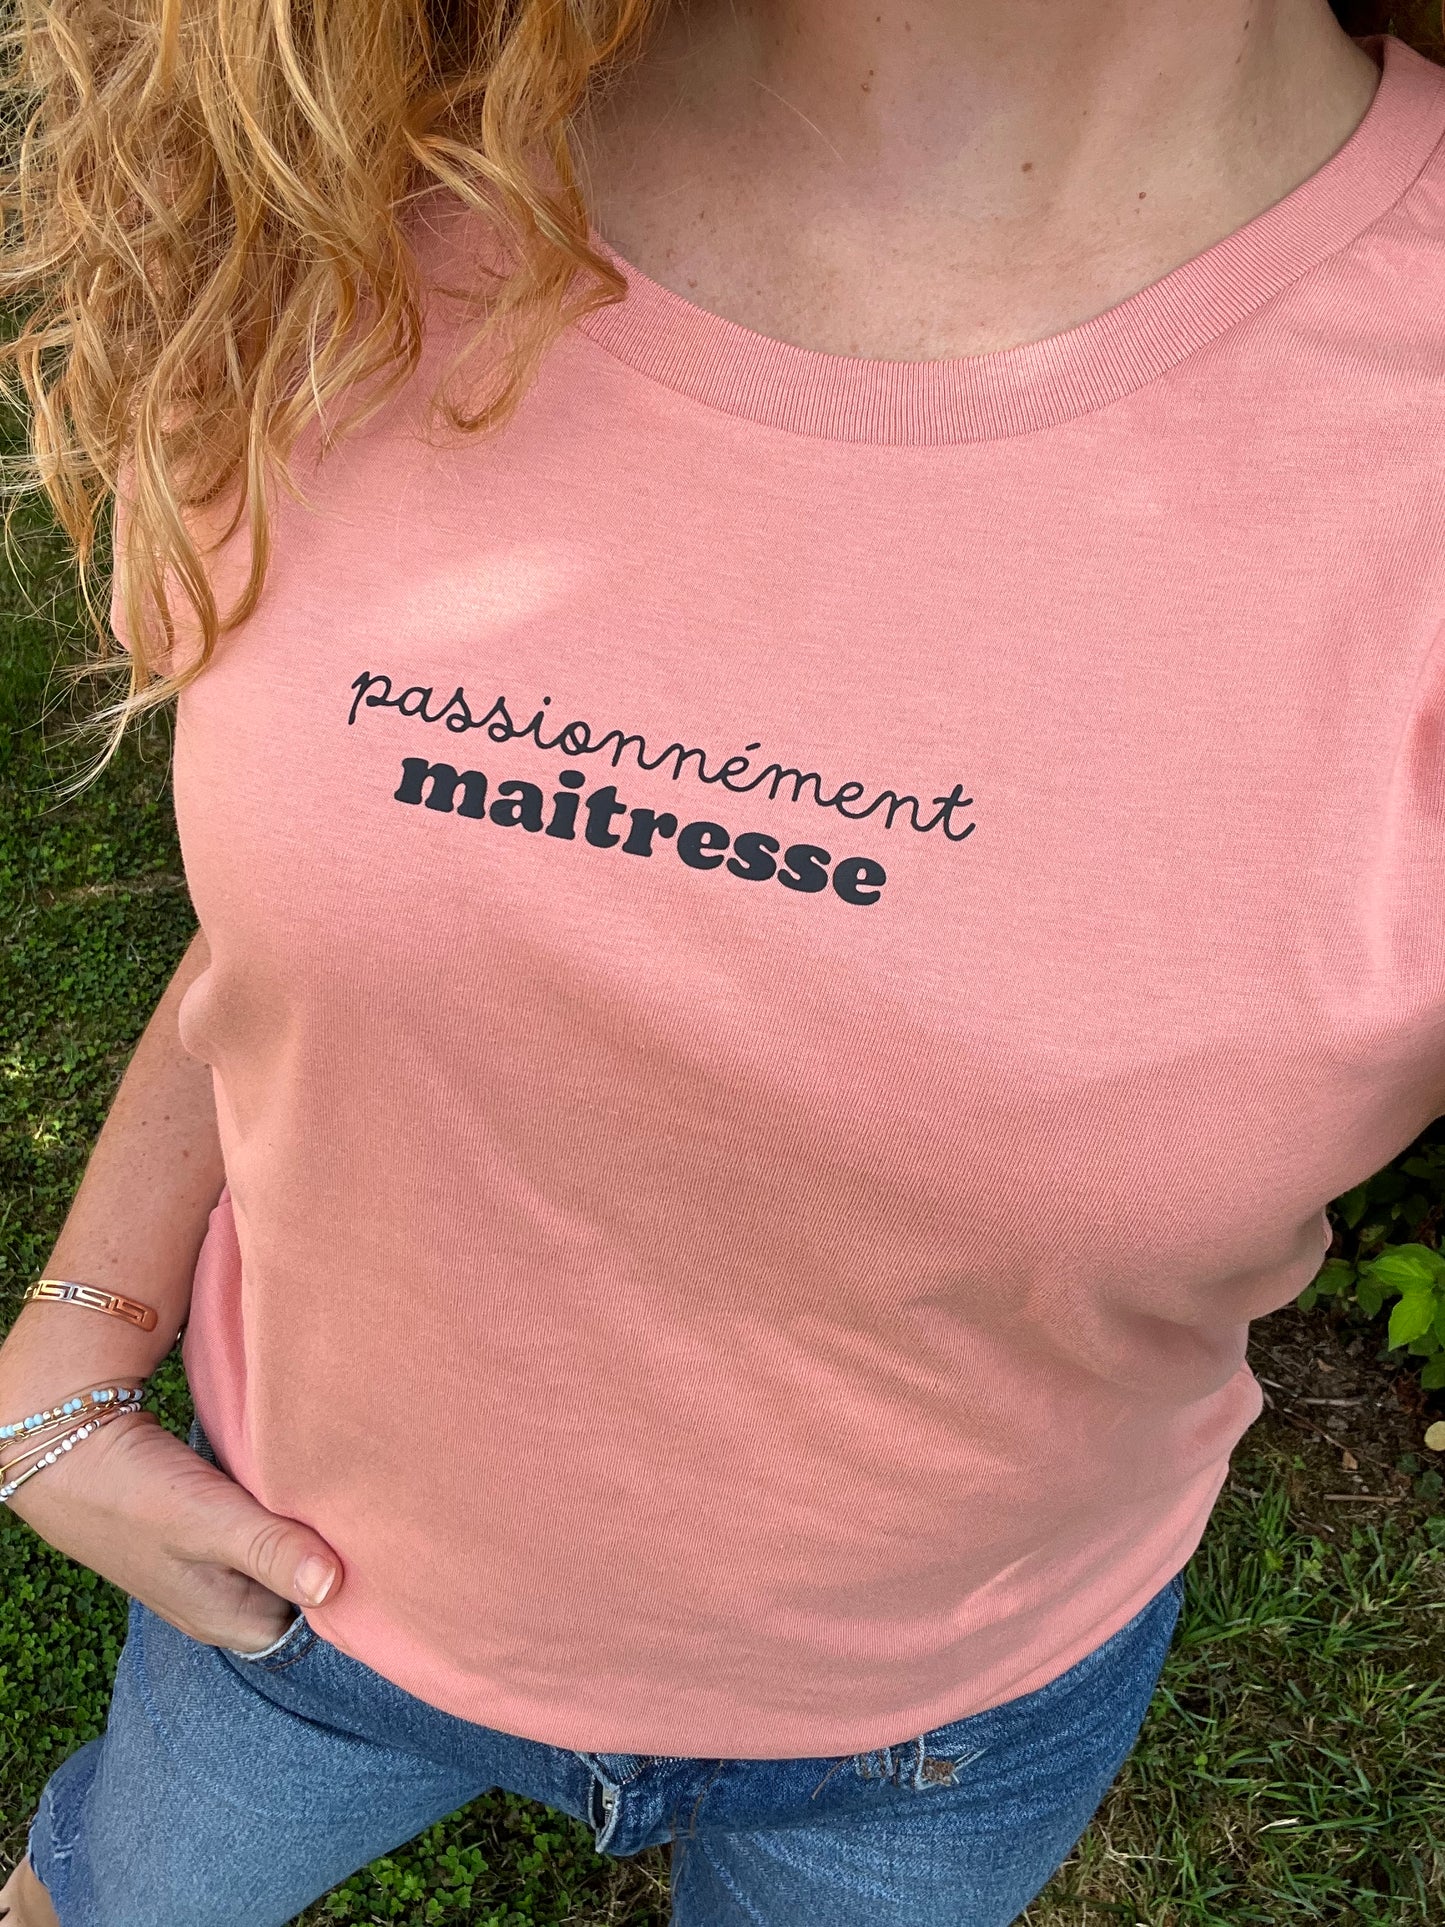 Tee-shirt Passionnément Maitresse coloris rose argile